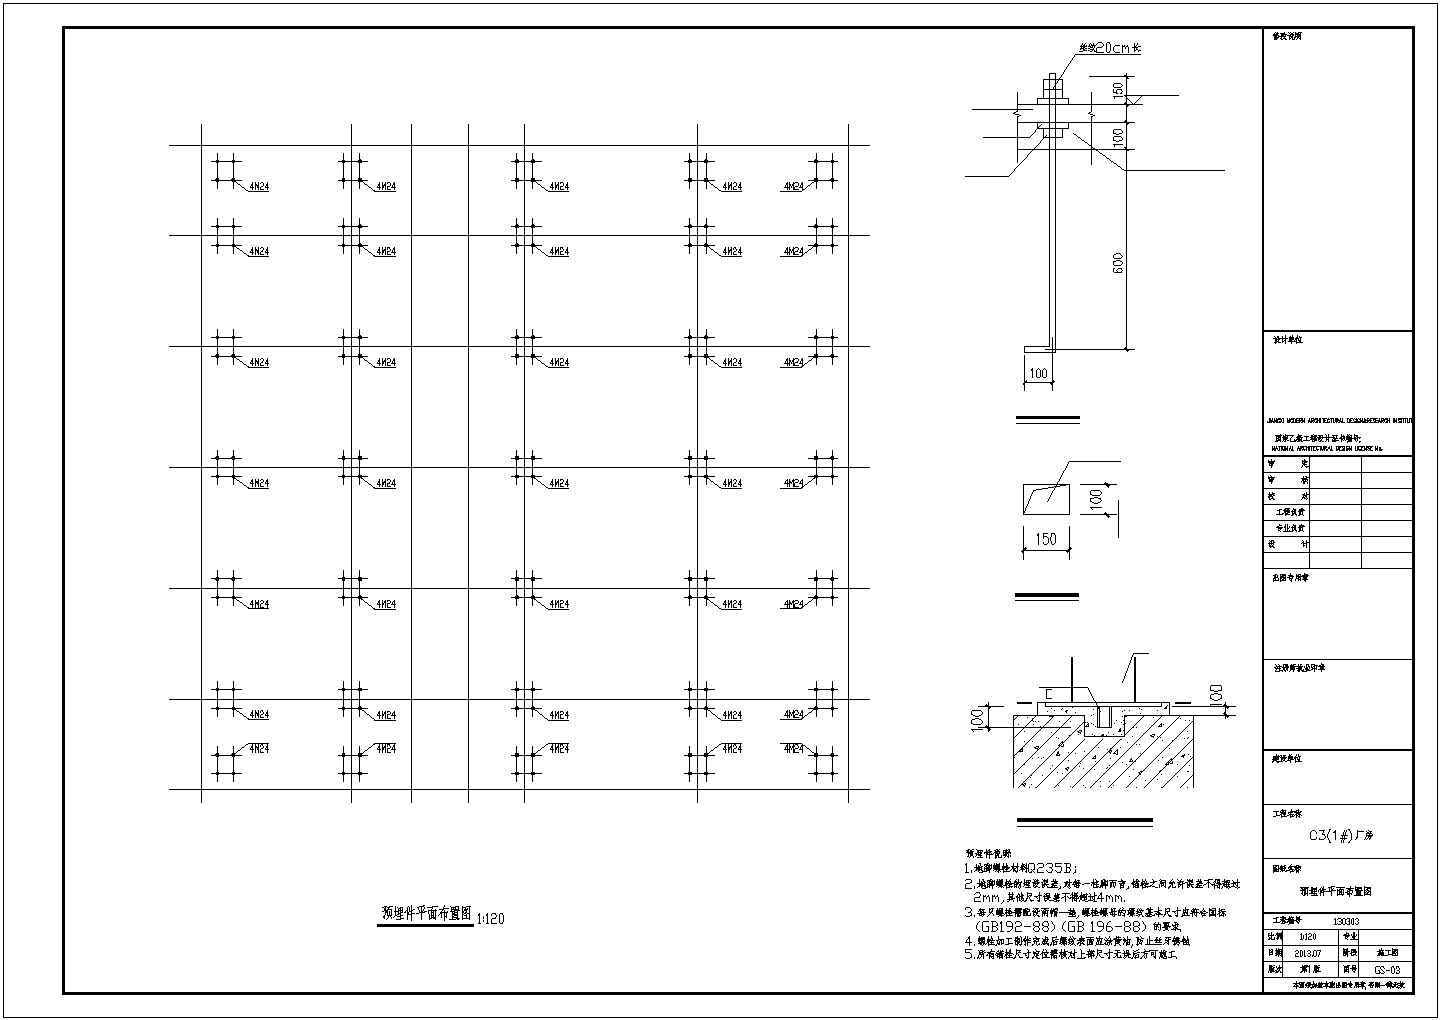 二层门式钢排架厂房结构施工图